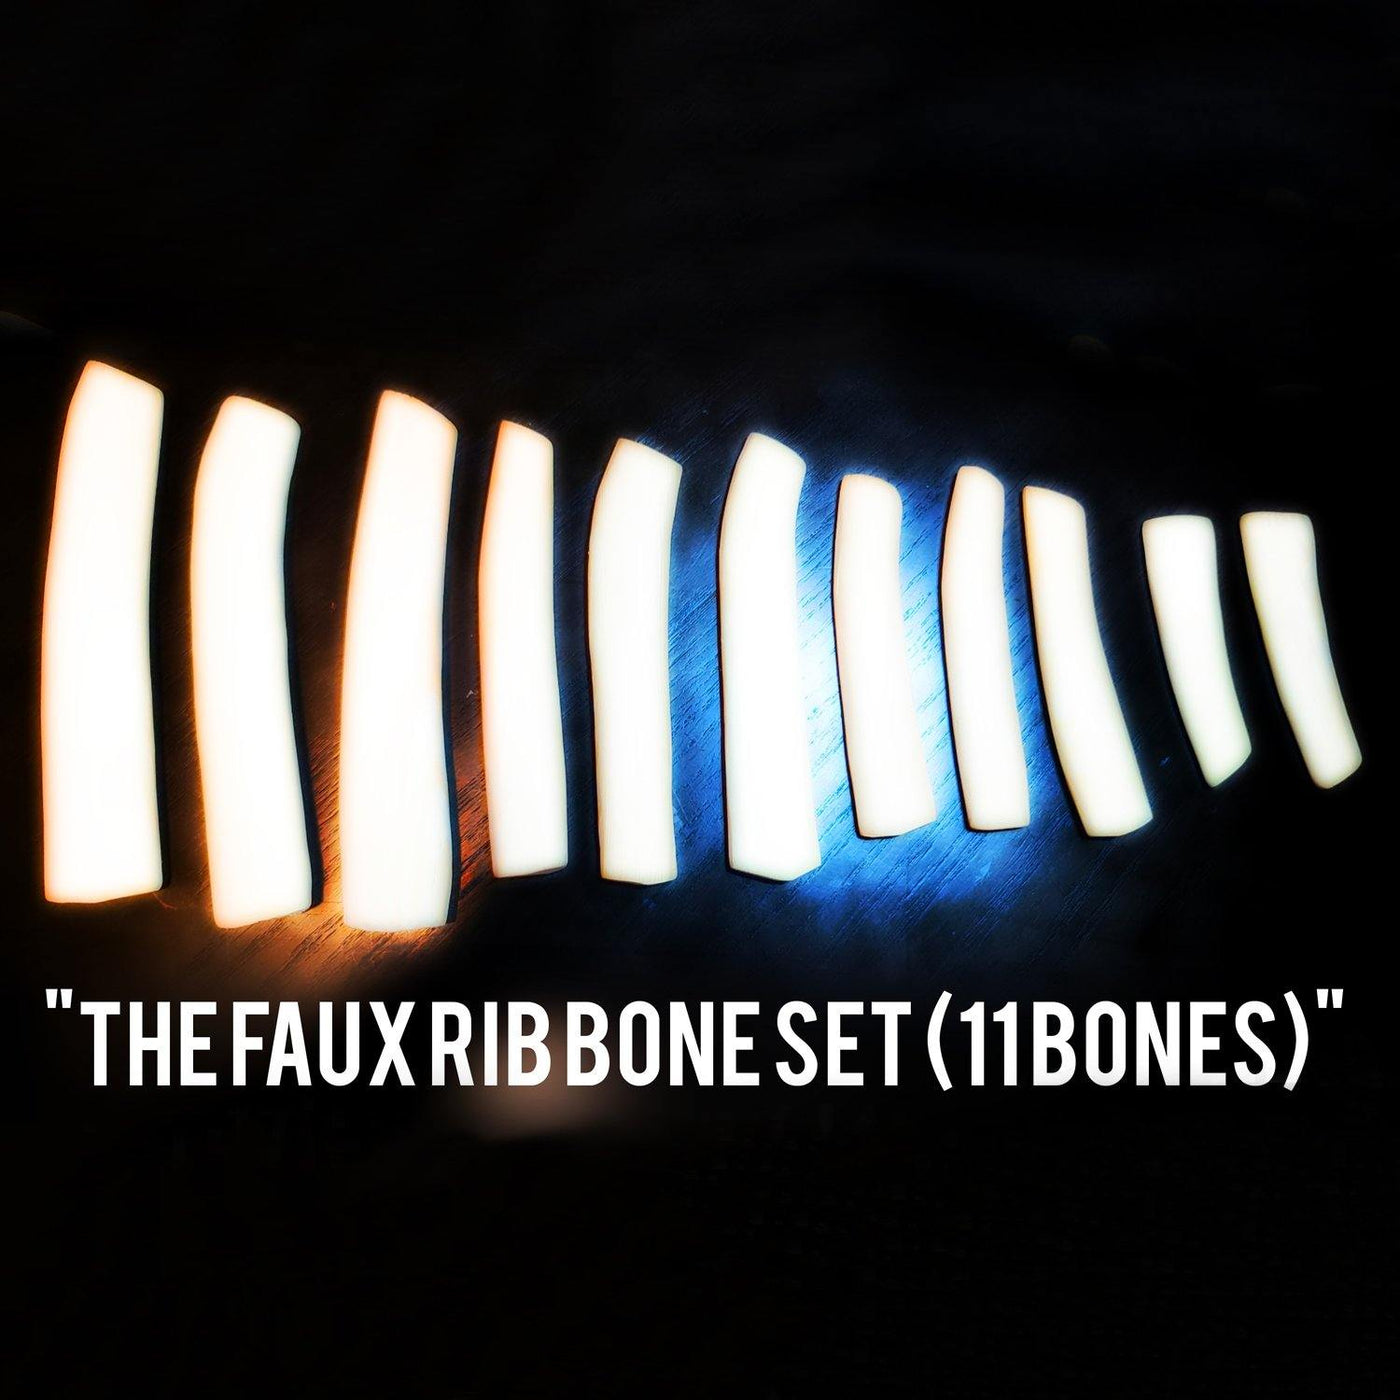 The Faux Rib Bones-Set